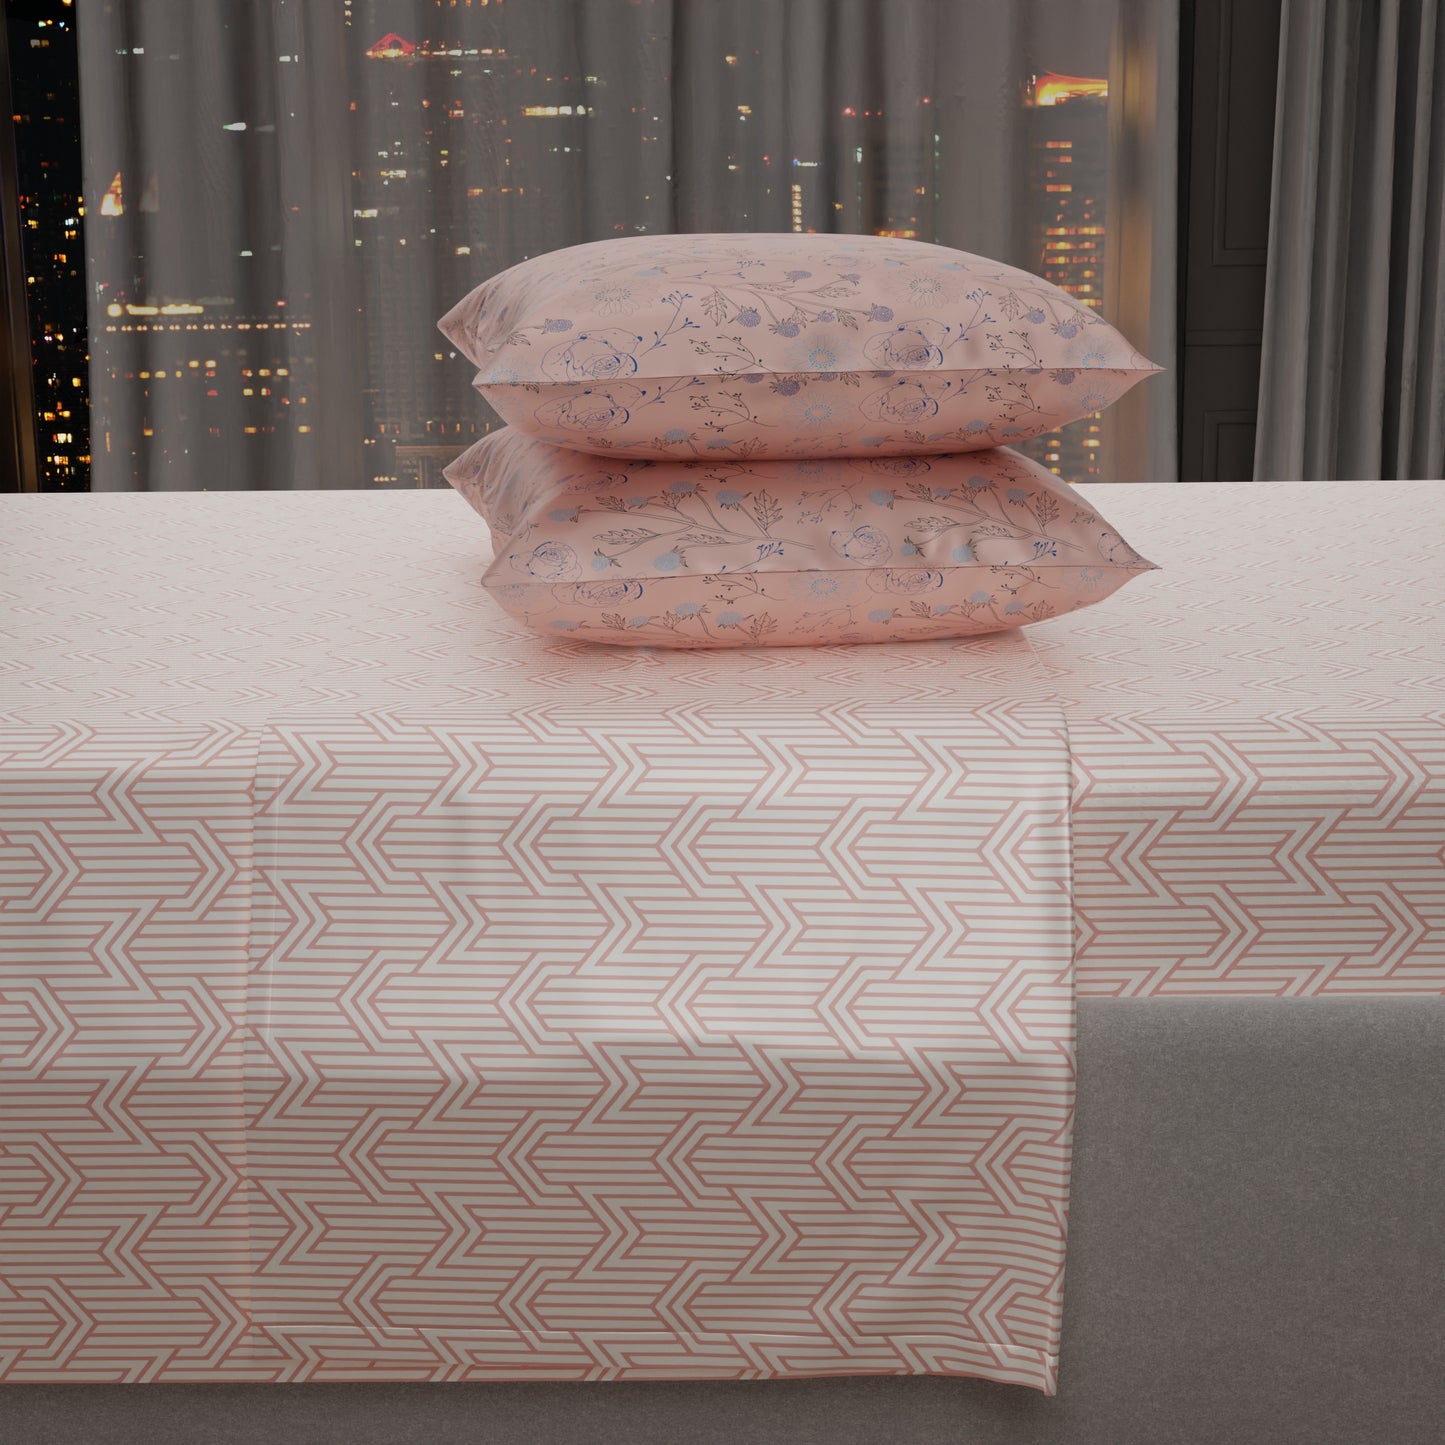 Peach Fuzz Mosaic Bedsheet Set